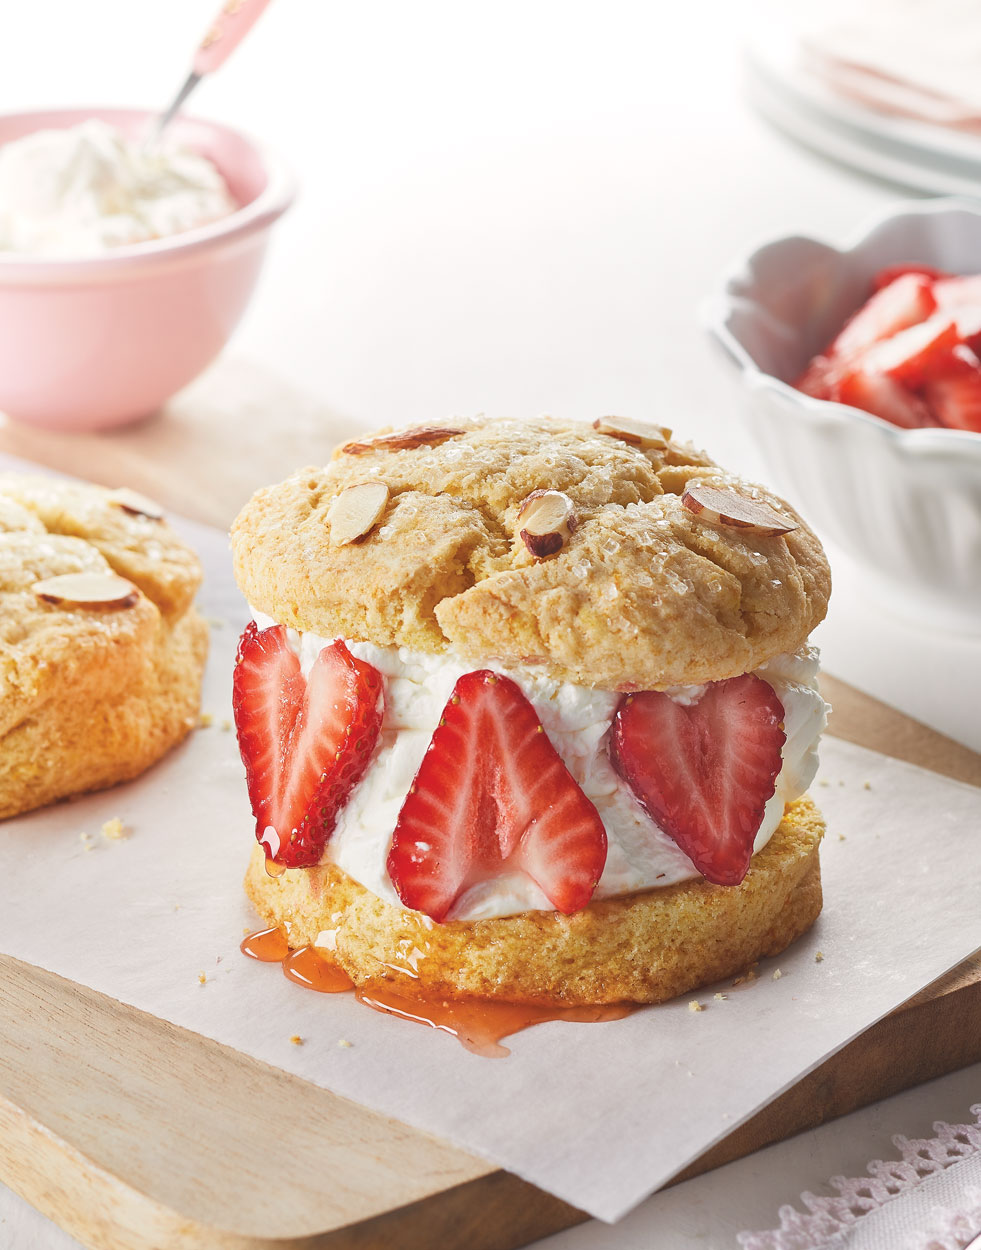 Strawberry Shortcakes with mascarpone whipped cream